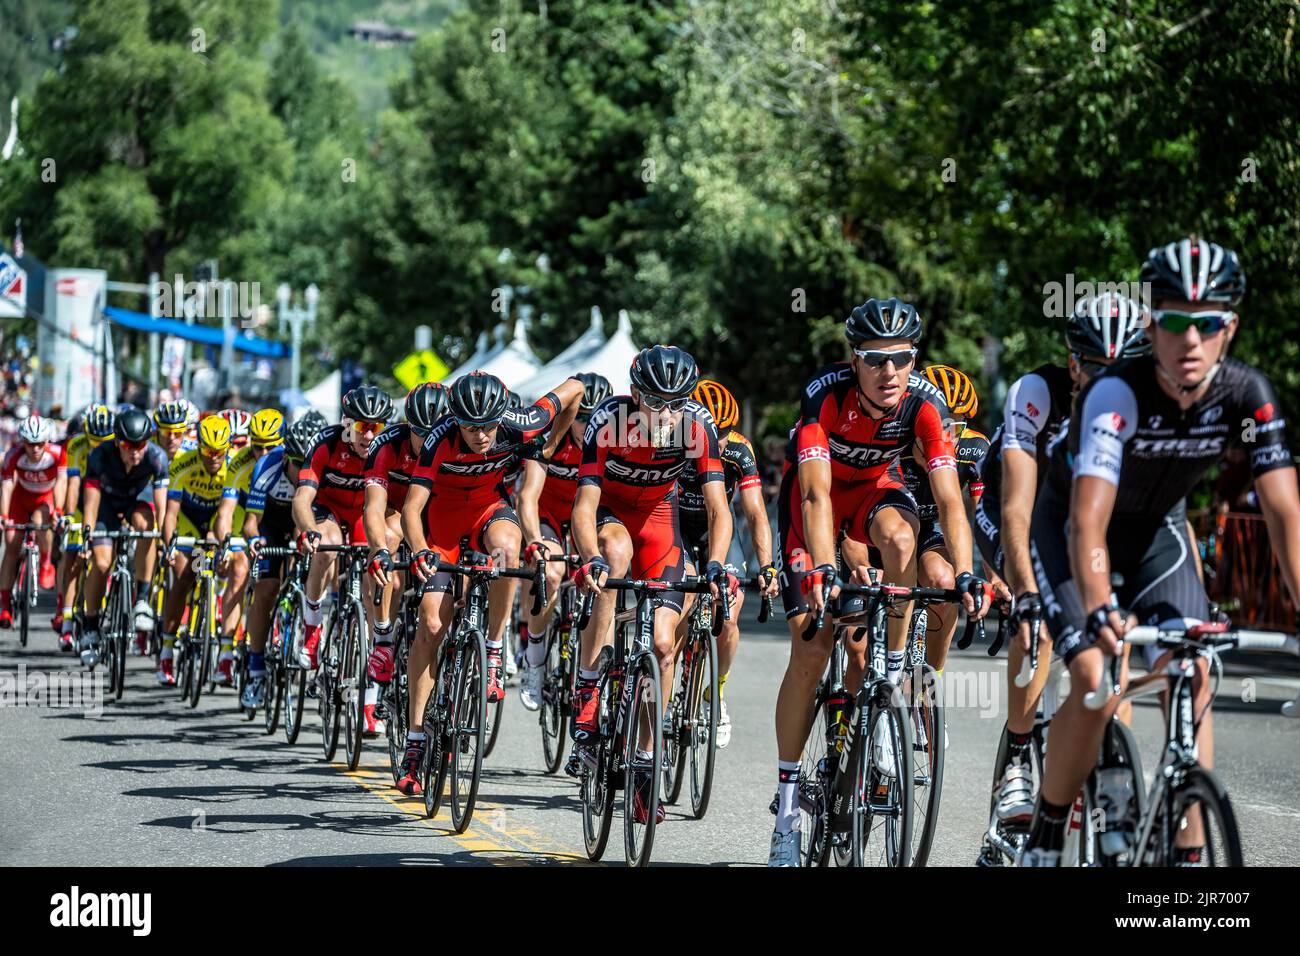 Cyclistes, cavaliers BMC en maillots rouges, course cycliste USA Pro Challenge, Aspen, Colorado, États-Unis Banque D'Images